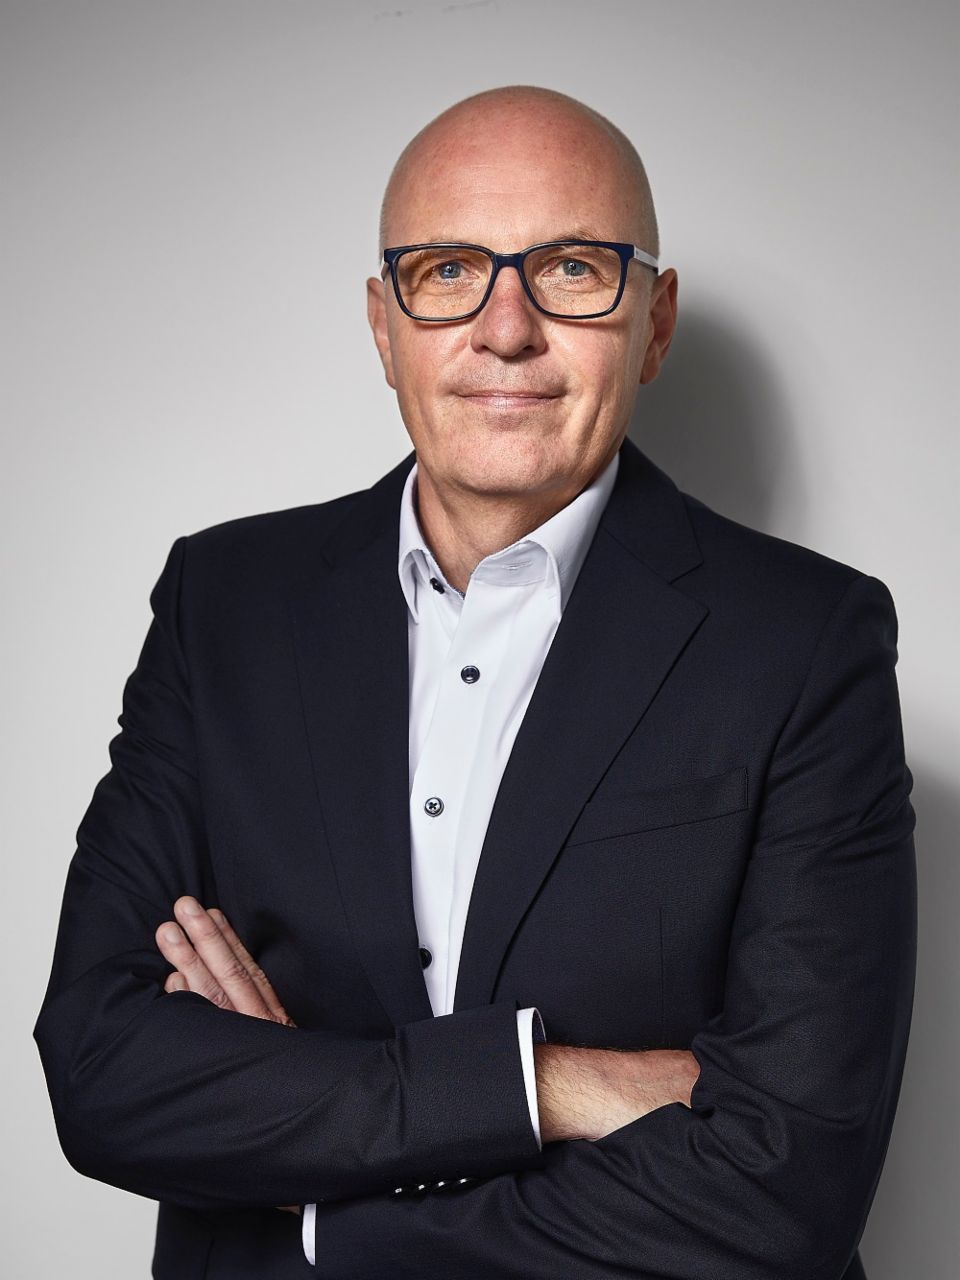 
Color portrait of Matthias Gründler, Chief Executive Officer TRATON SE